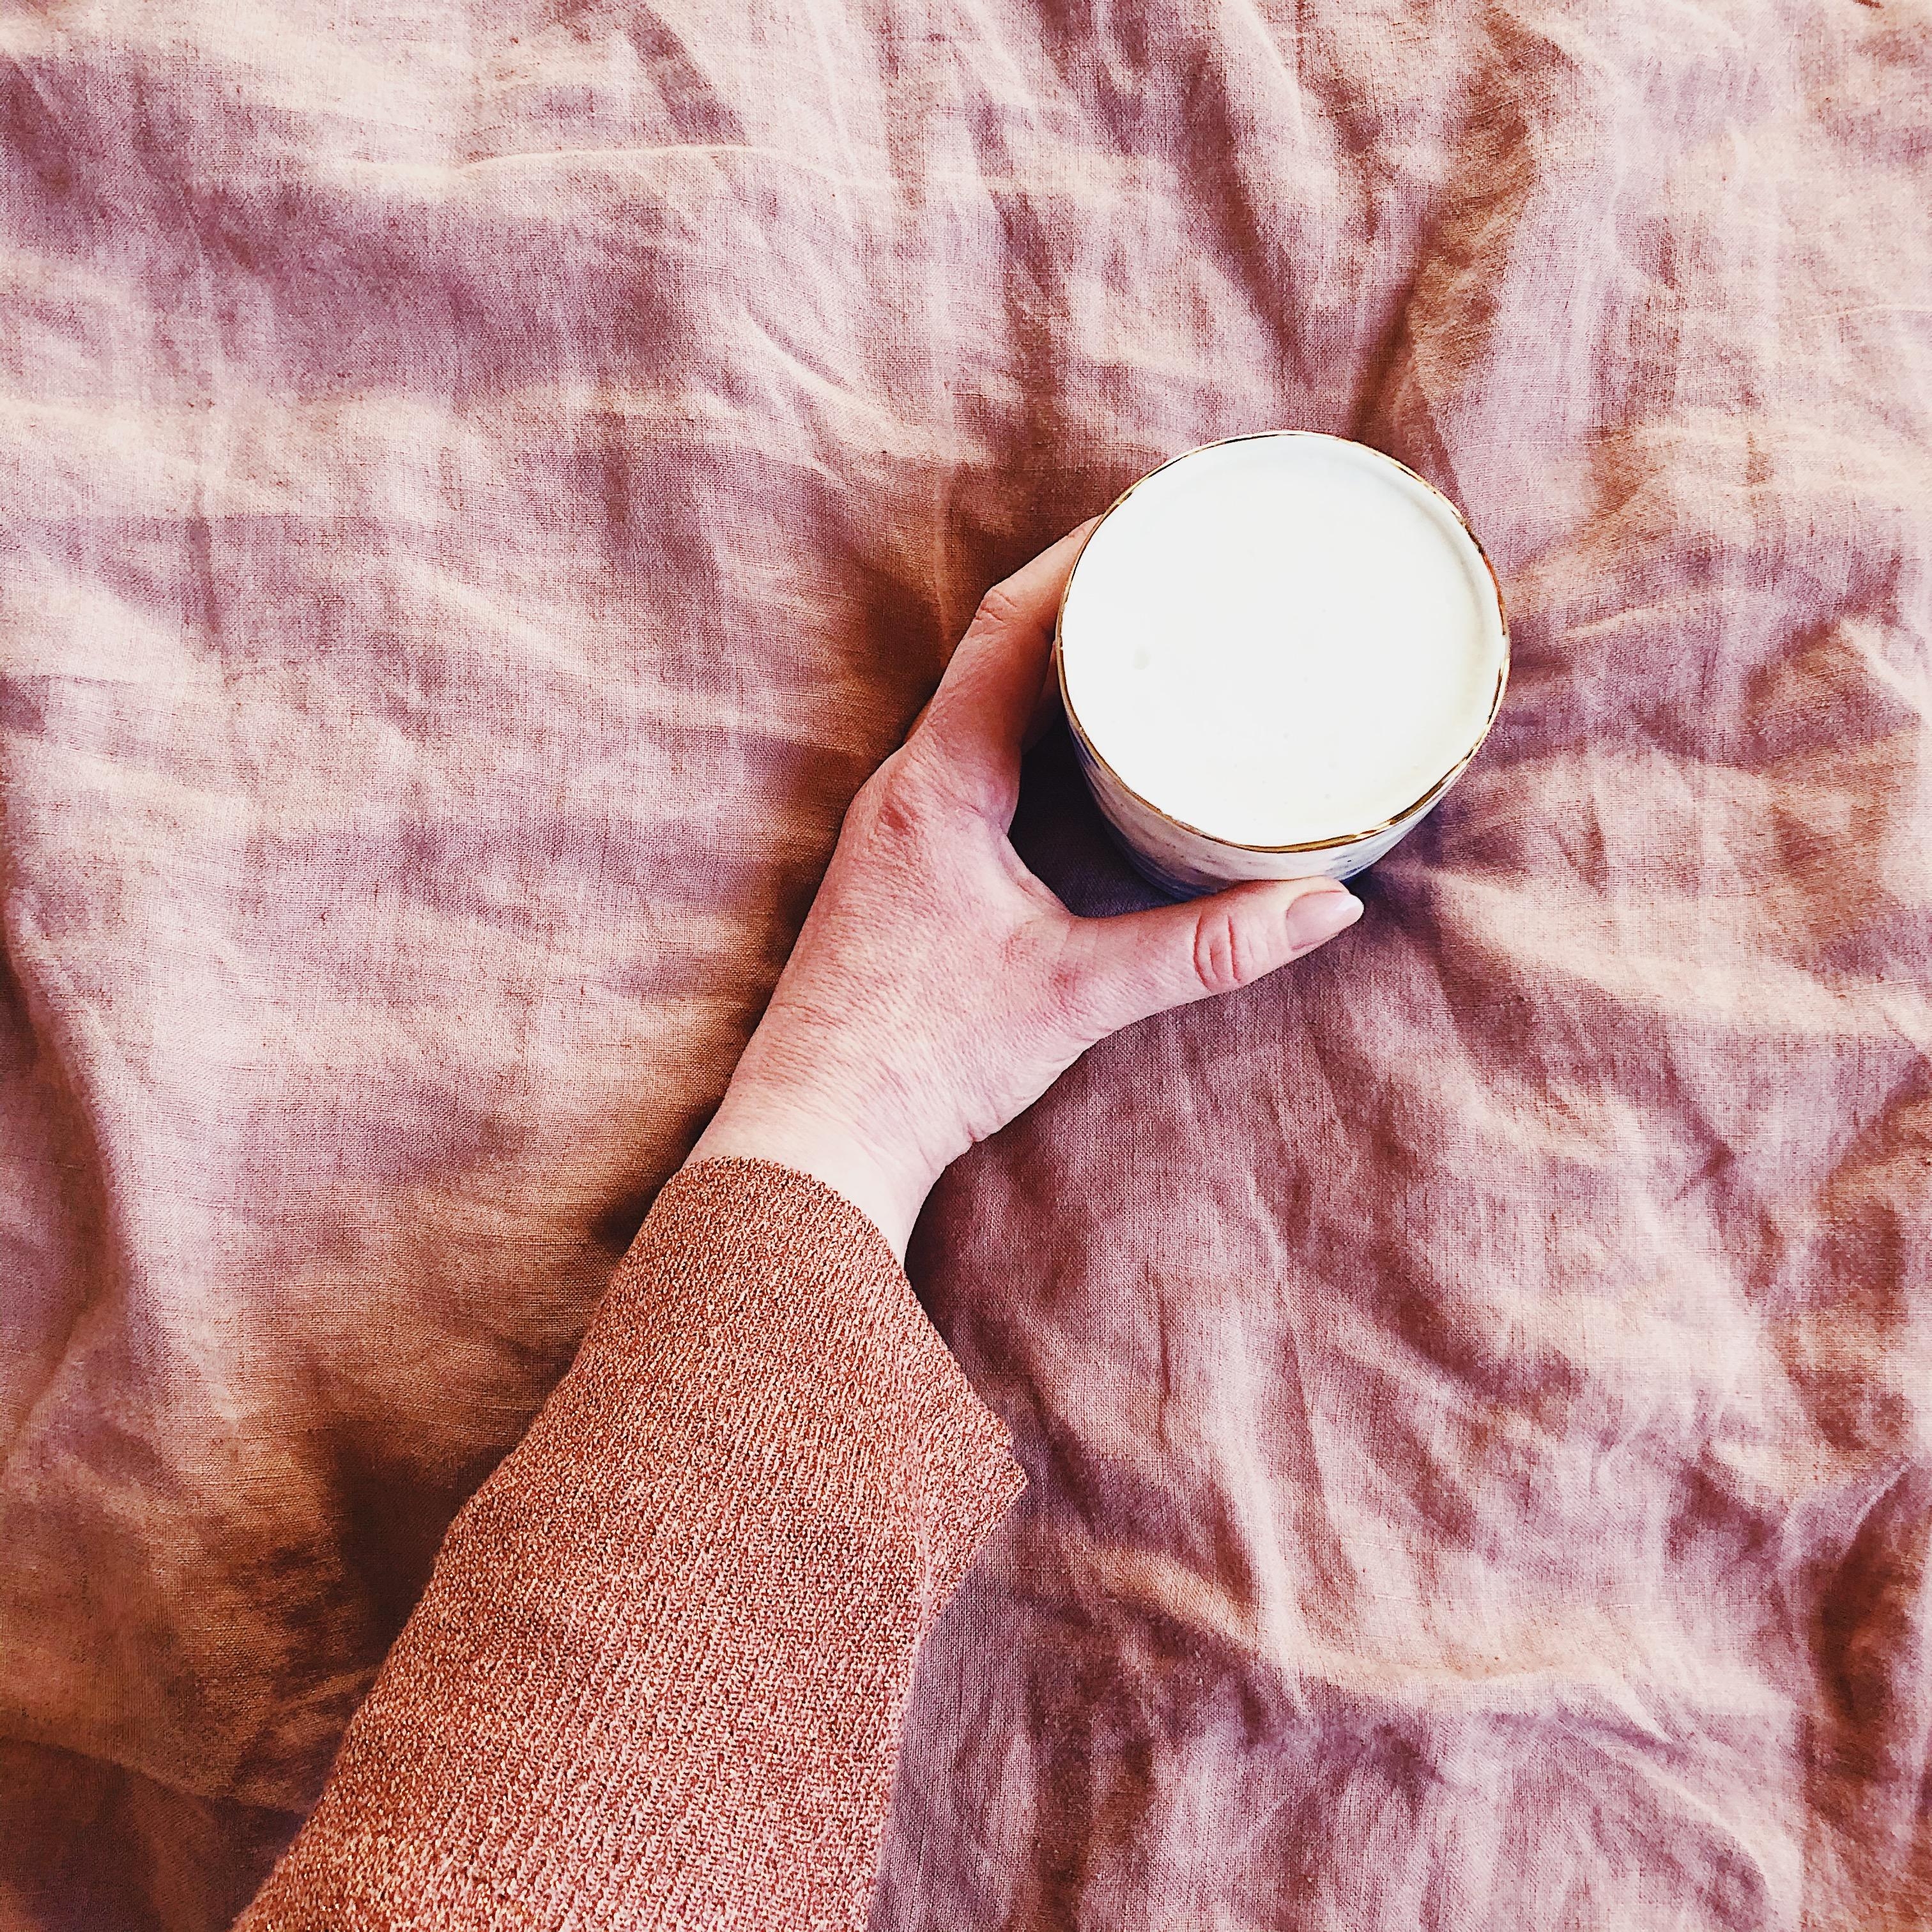 In Sorbetfarben aufwachen und Kaffee im Bett trinken. Alles erreicht 😅
#Bettwäsche #Kaffee 